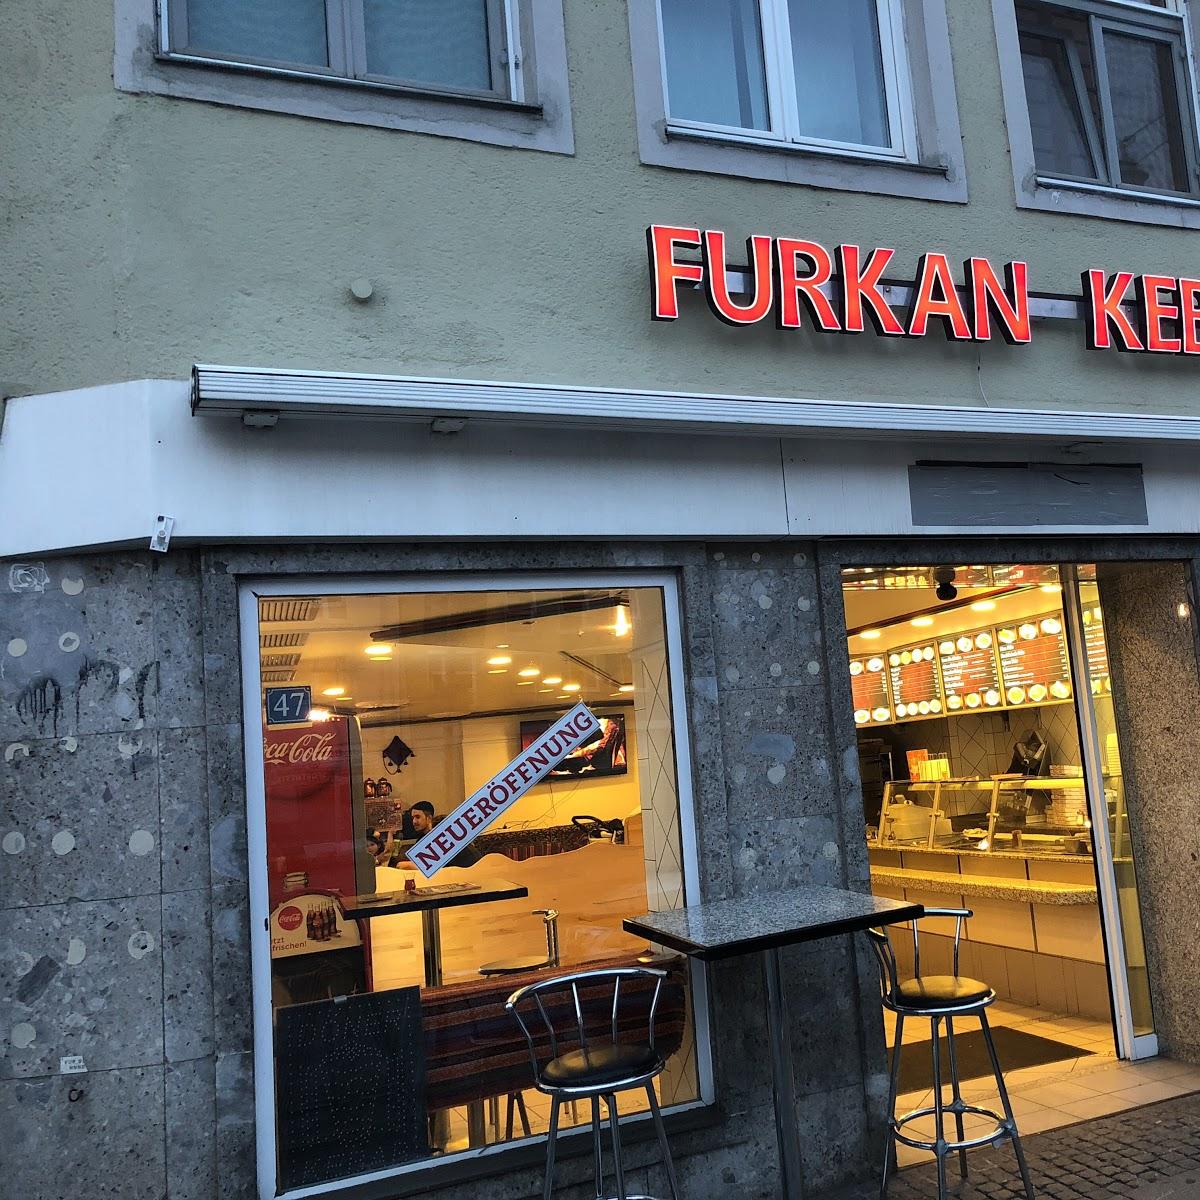 Restaurant "Utshob Kebap" in Augsburg